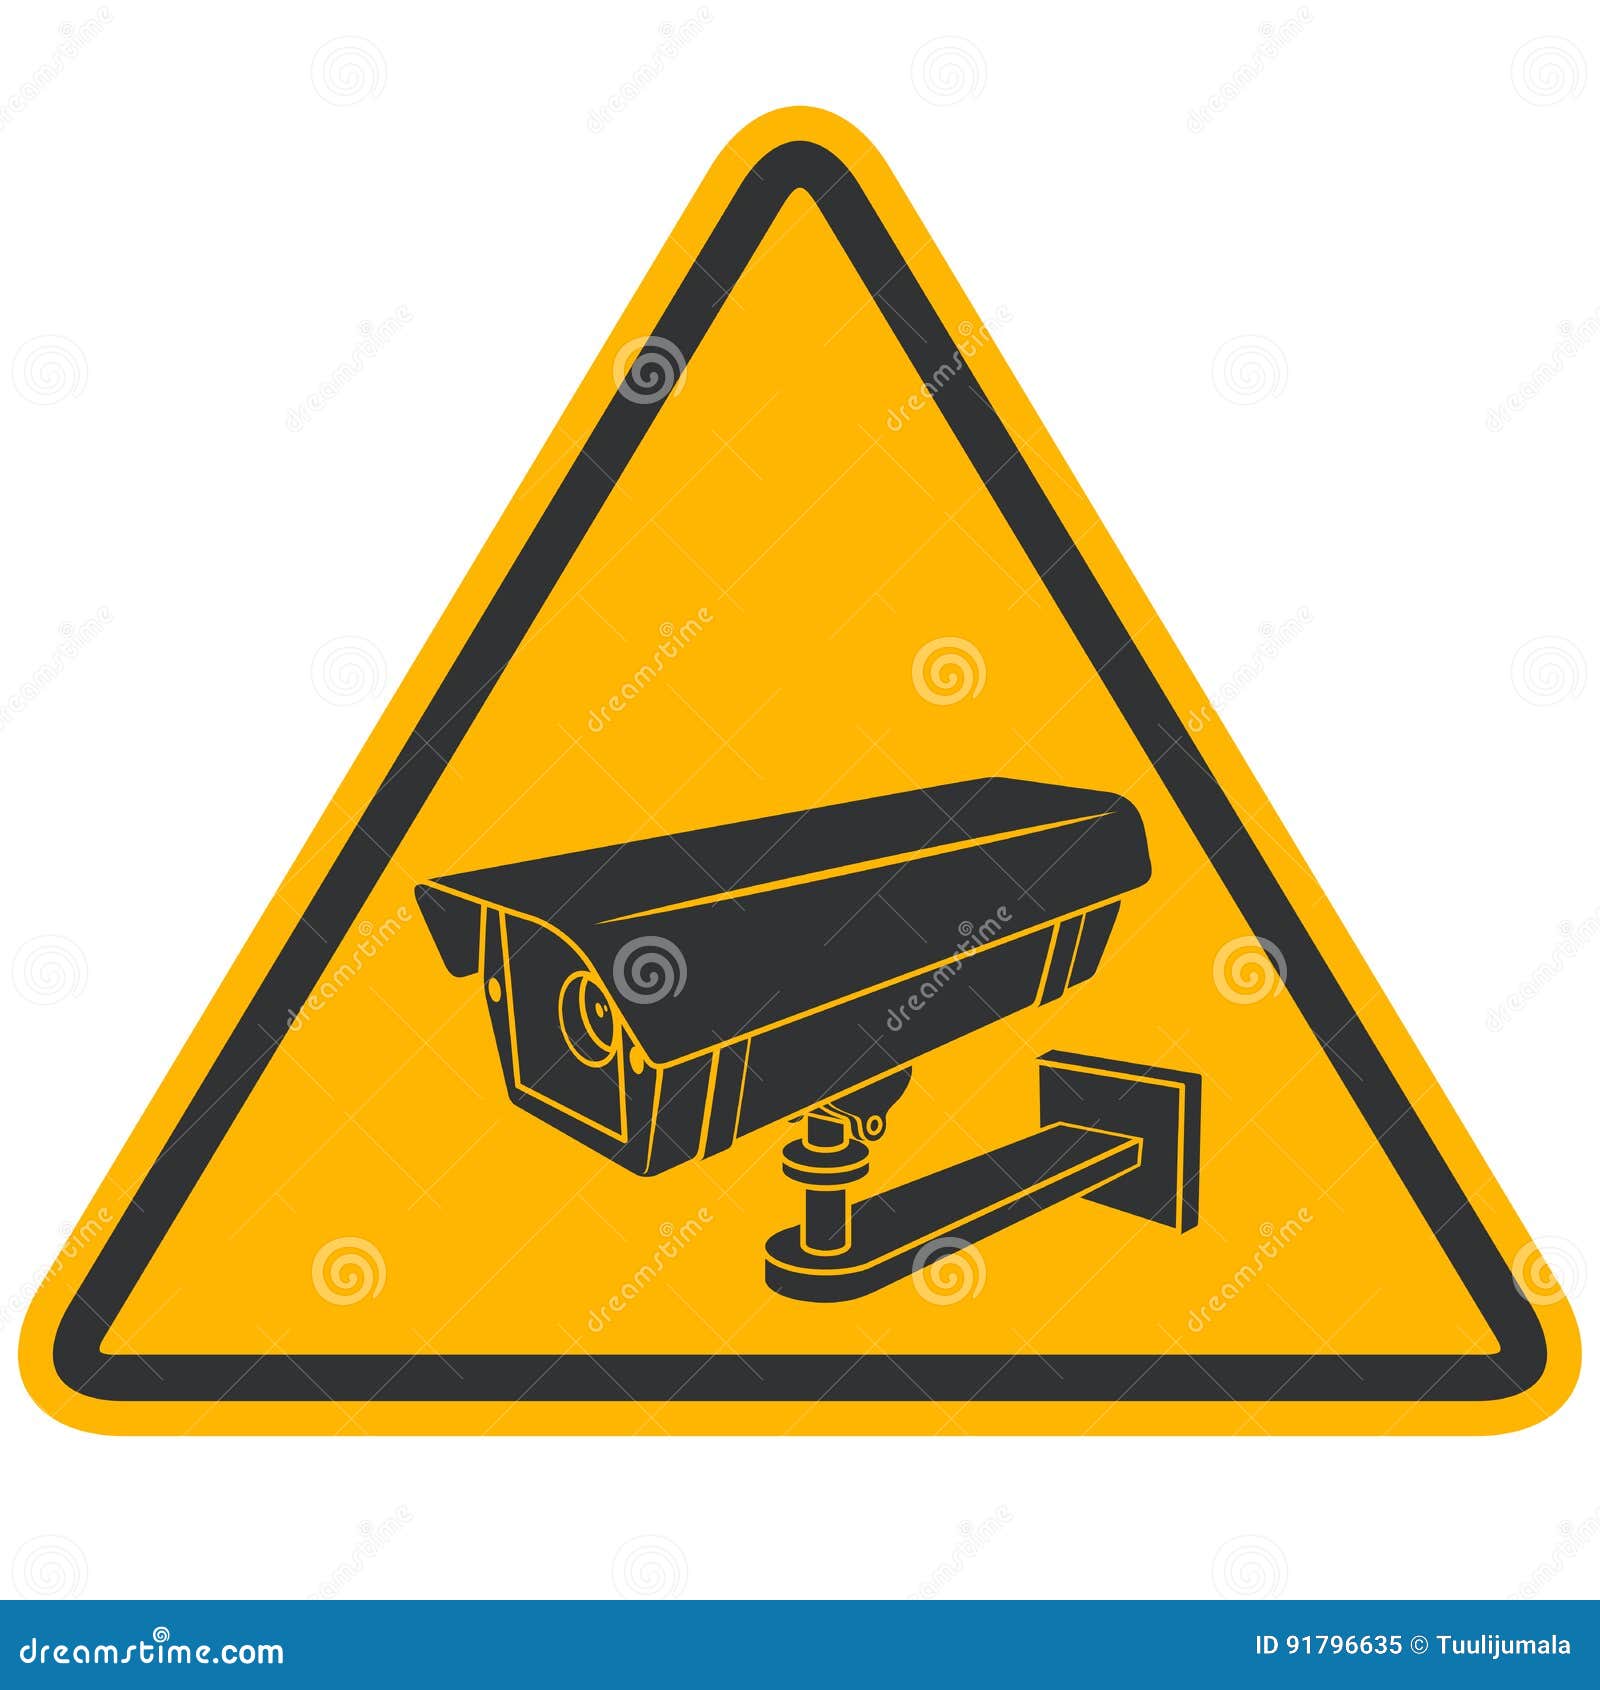 A4 30 x 20 cm CCTV Kamera Warnzeichen x 2 Überwachungskamera Warnzeichen 